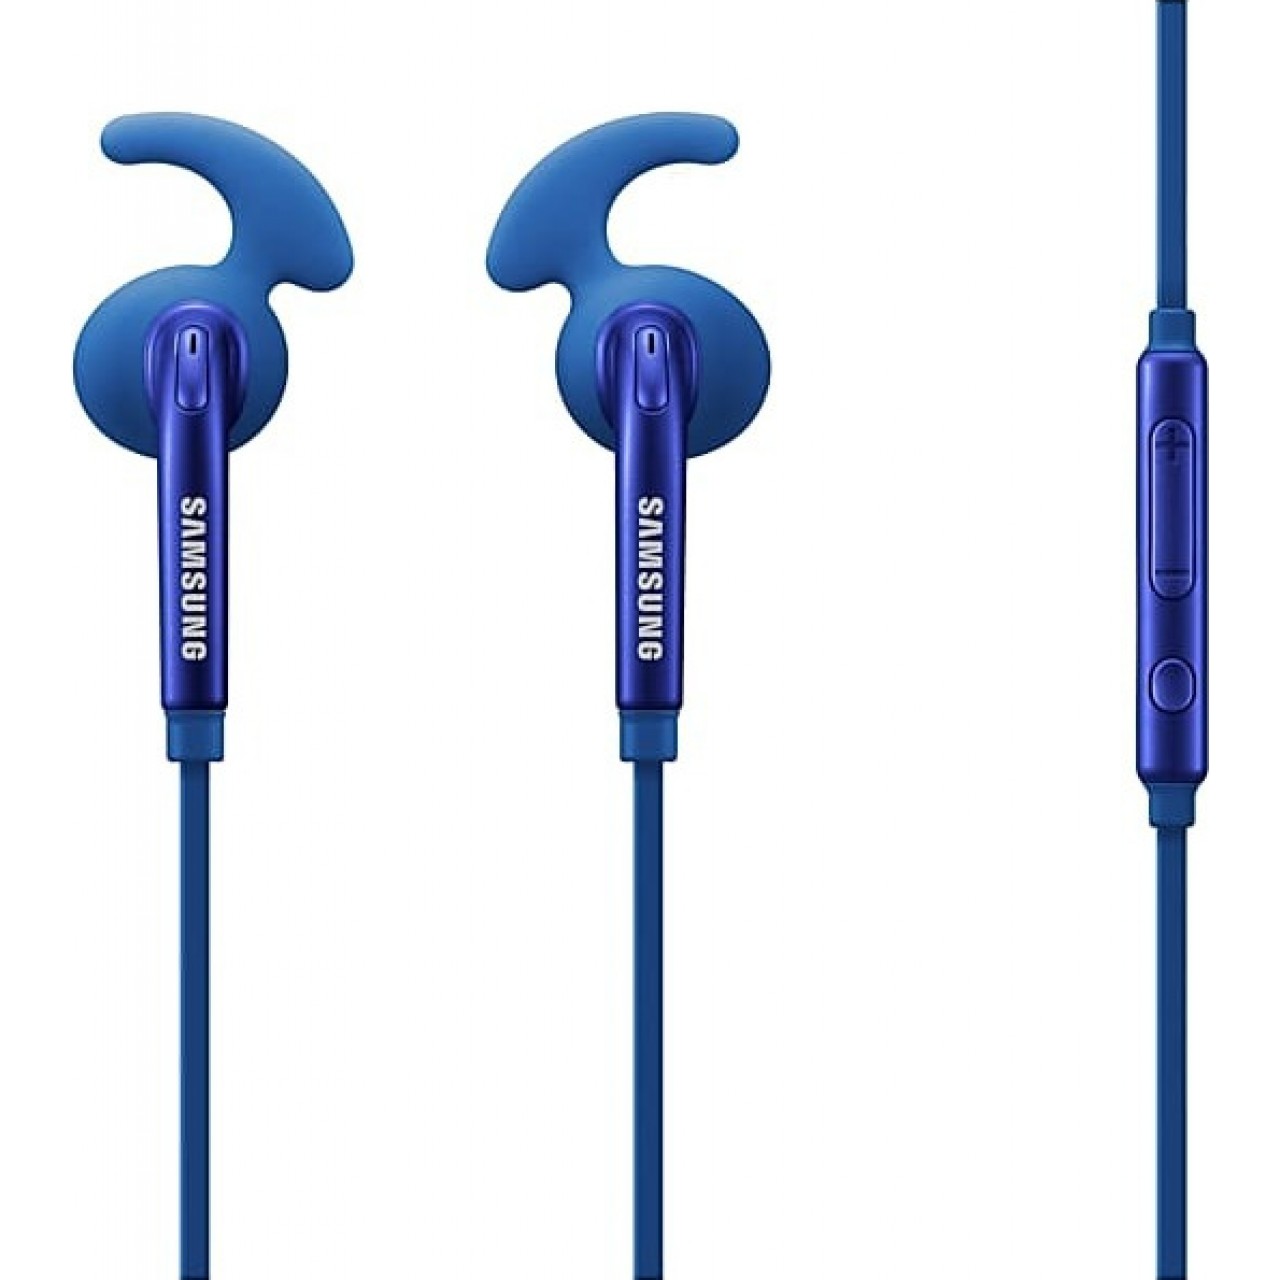 Ακουστικά Samsung in-ear fit Hybrid Headphones Arctic EG920BLEGWW Μπλε Retail - 5186 - Μπλε